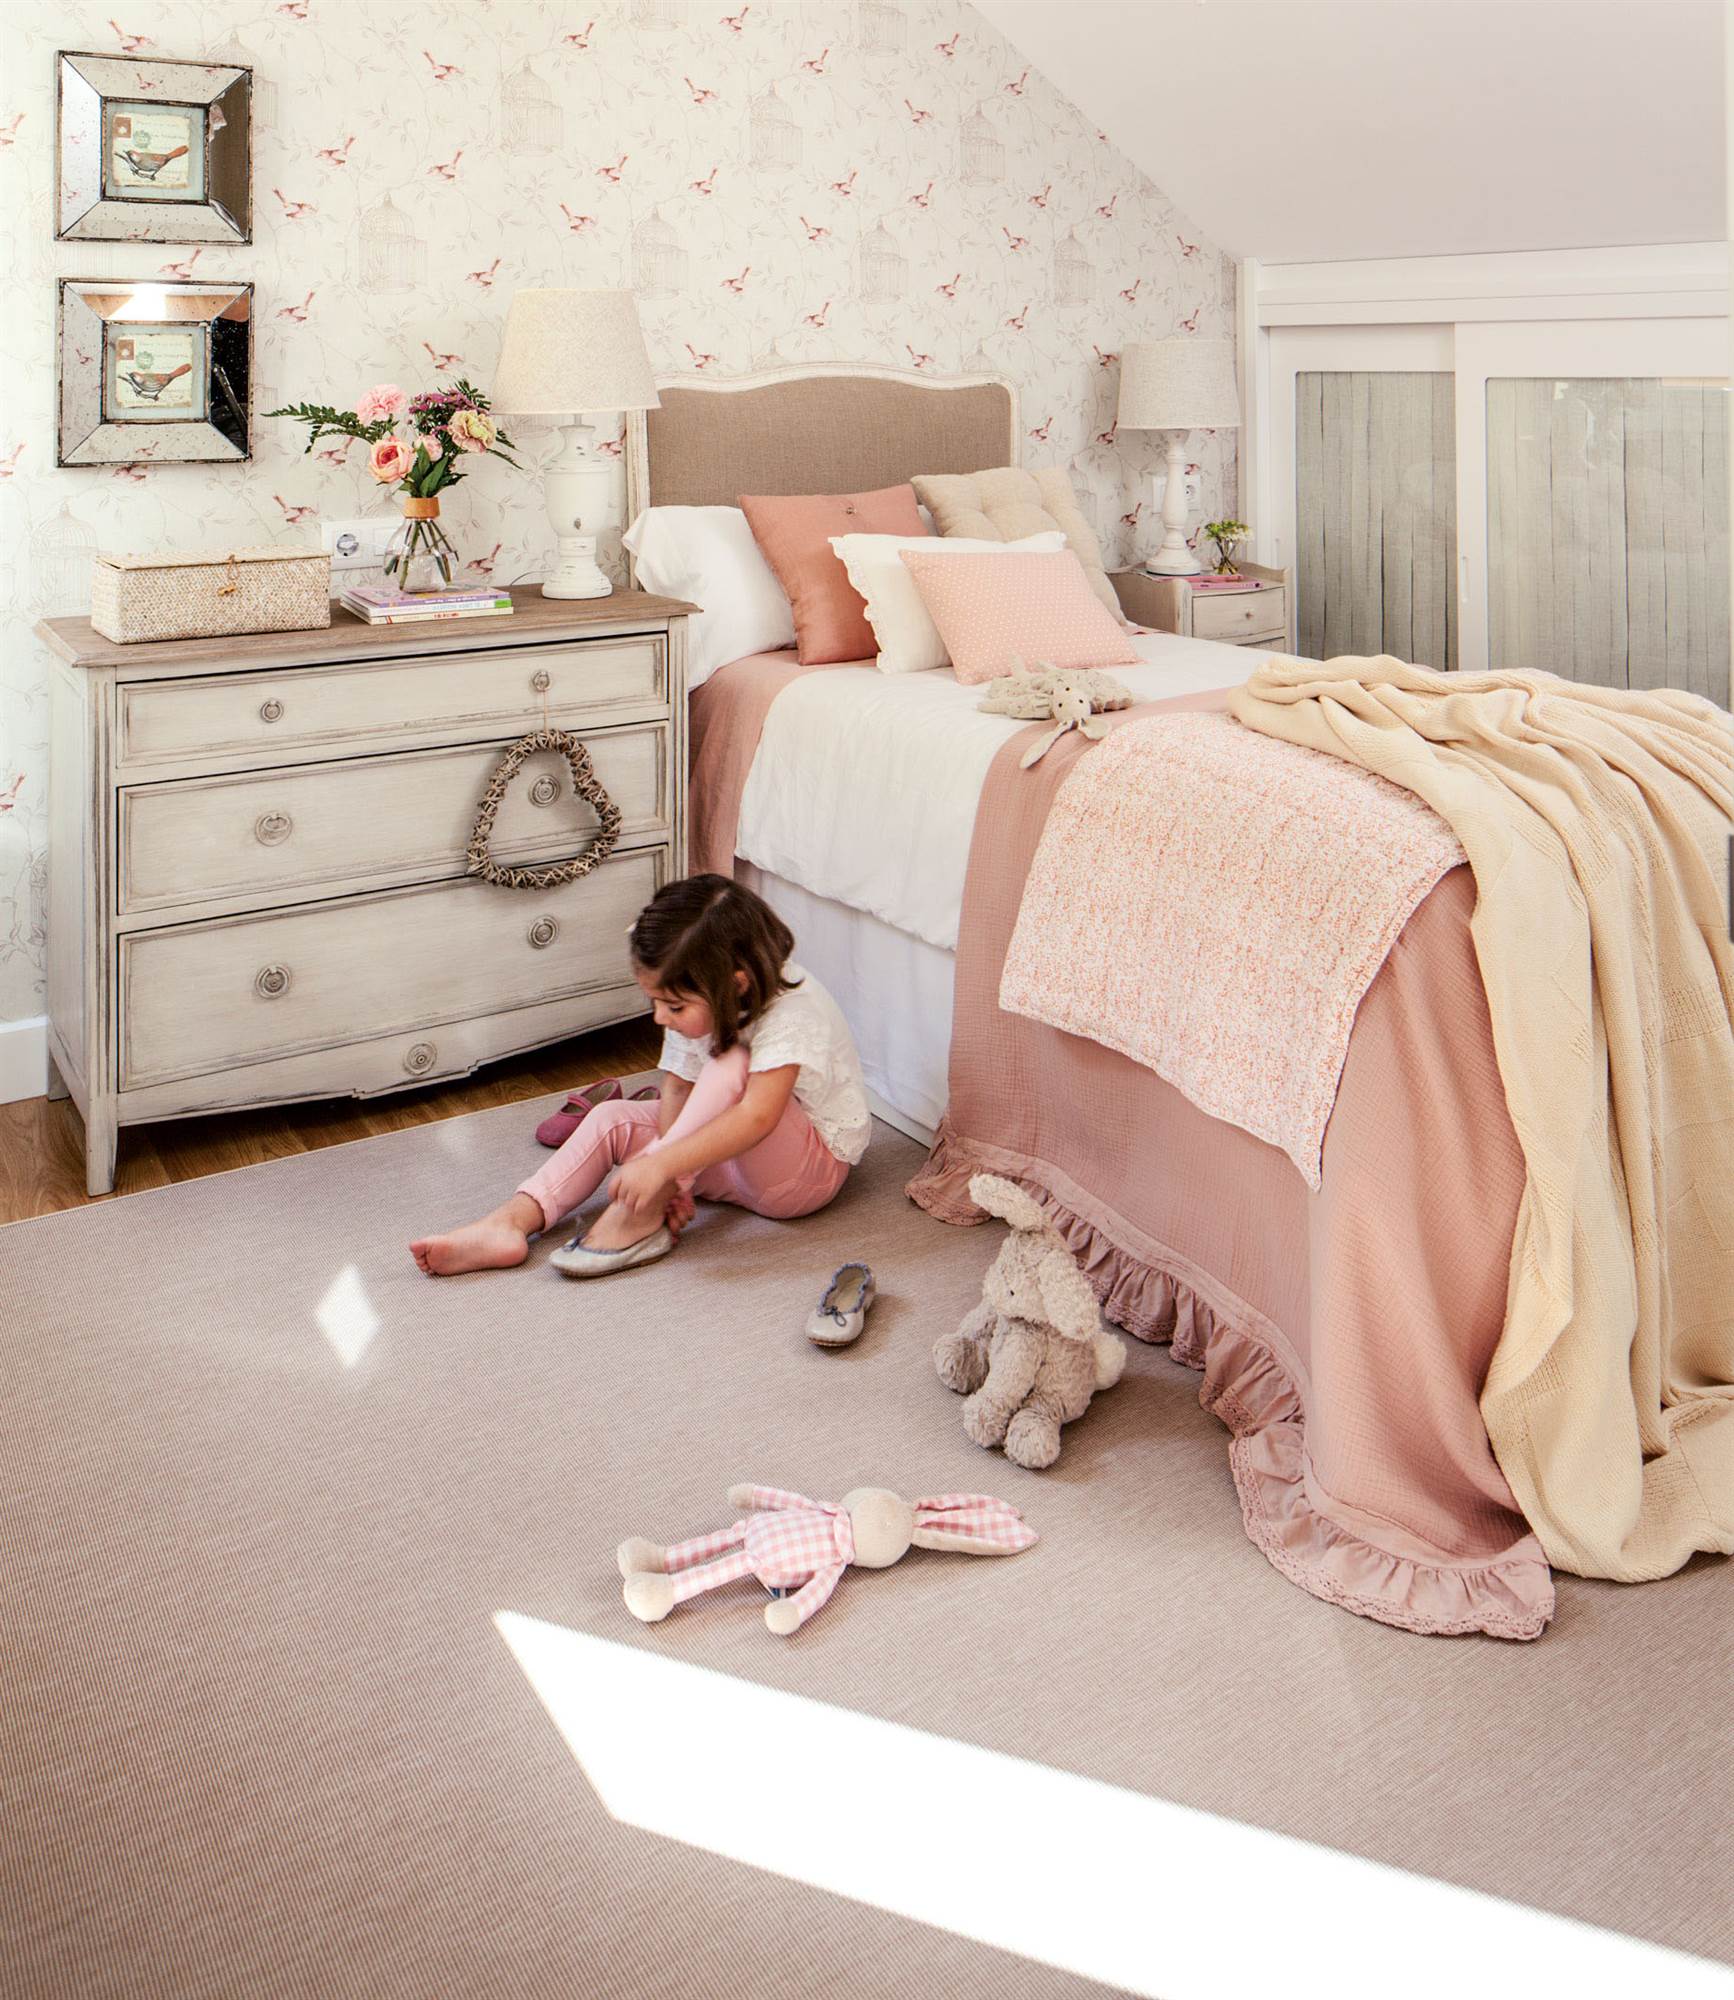 Habitación infantil de estilo romántico en tonos rosas con papel pintado, cómoda provenzal y cabecero de cama de tela